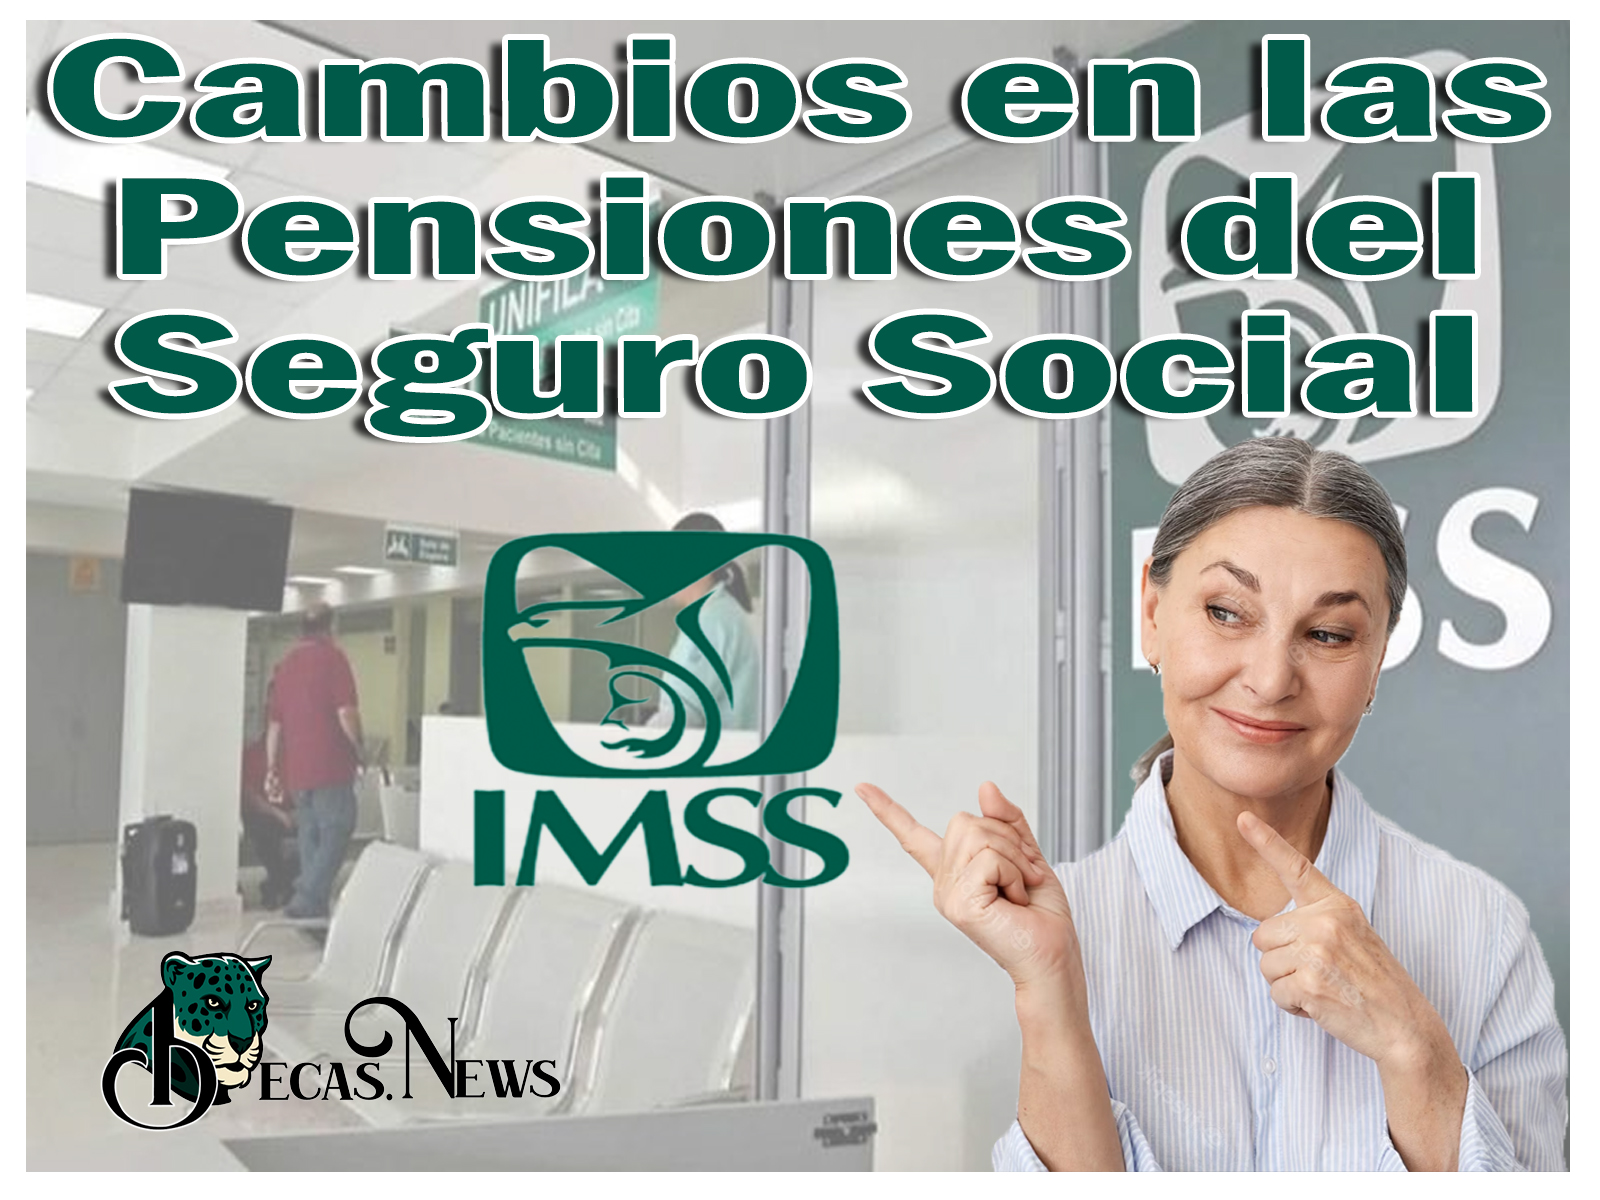 Cambios en las Pensiones del Seguro Social IMSS BECAS.NEWS